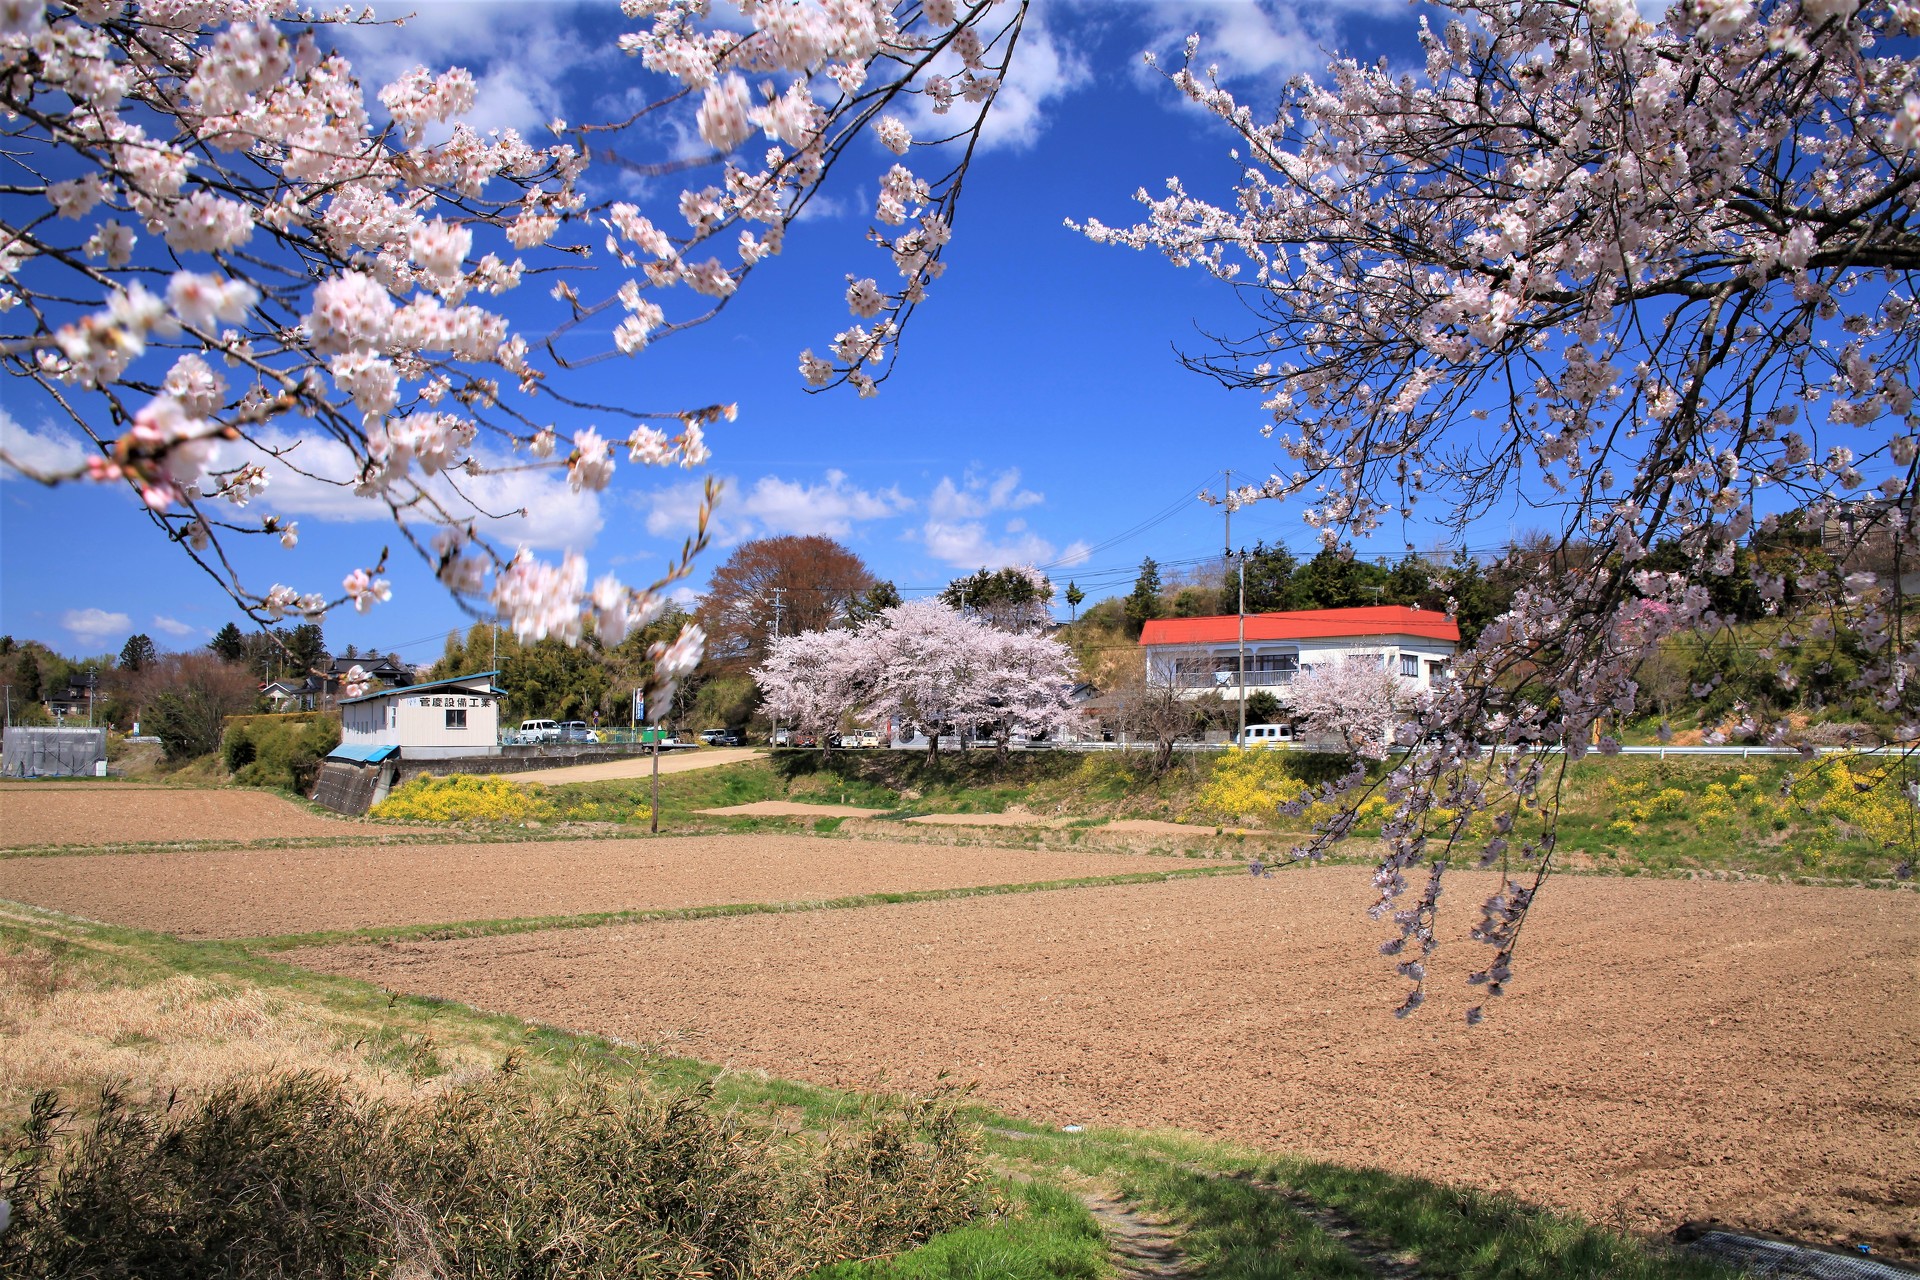 日本の風景 みなみかた春風景 壁紙19x1280 壁紙館